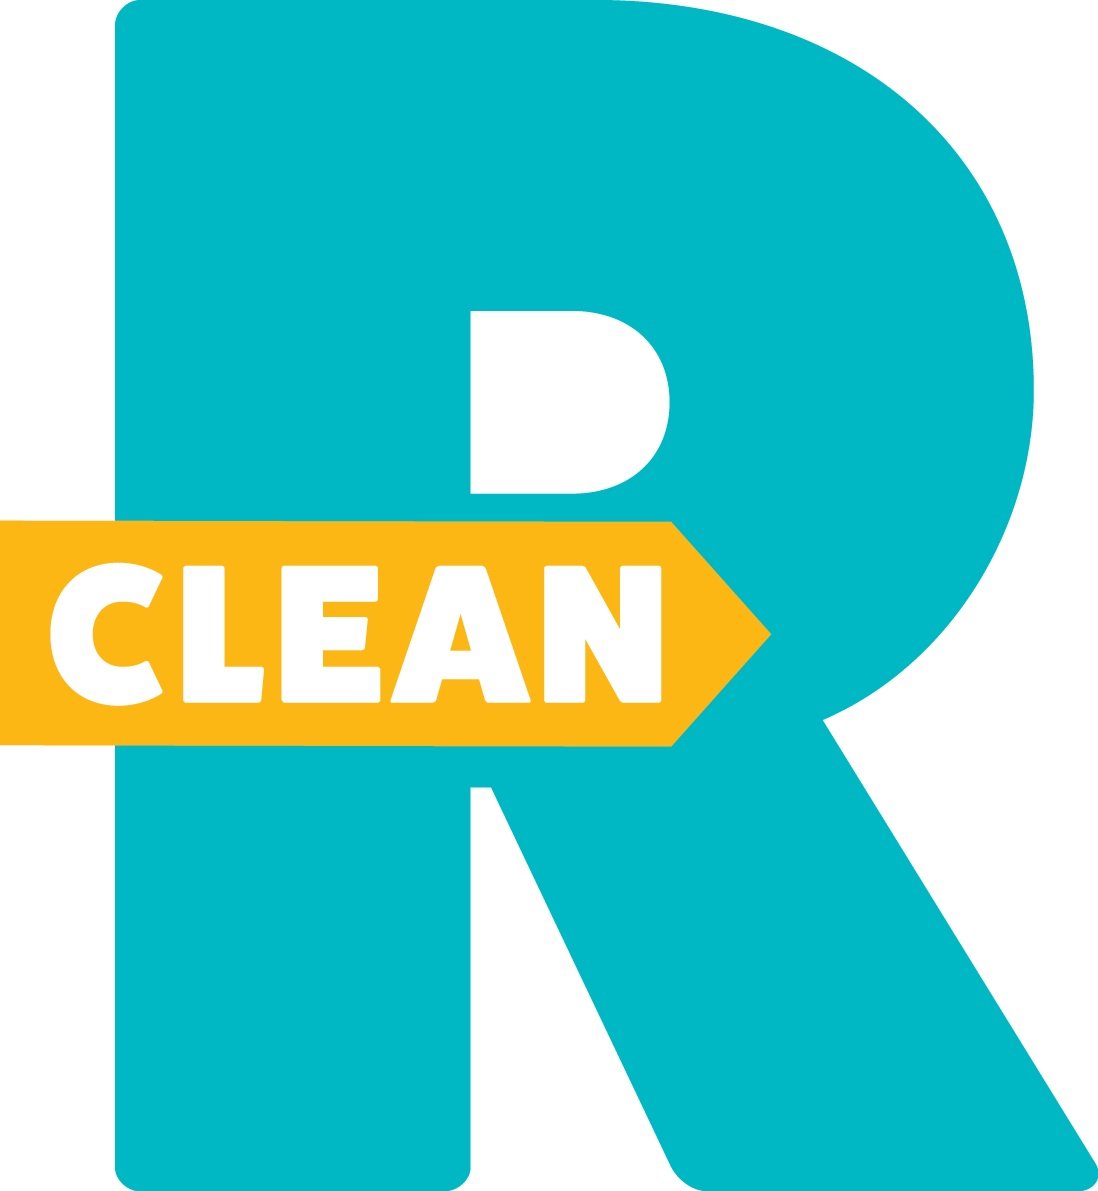 Clean R